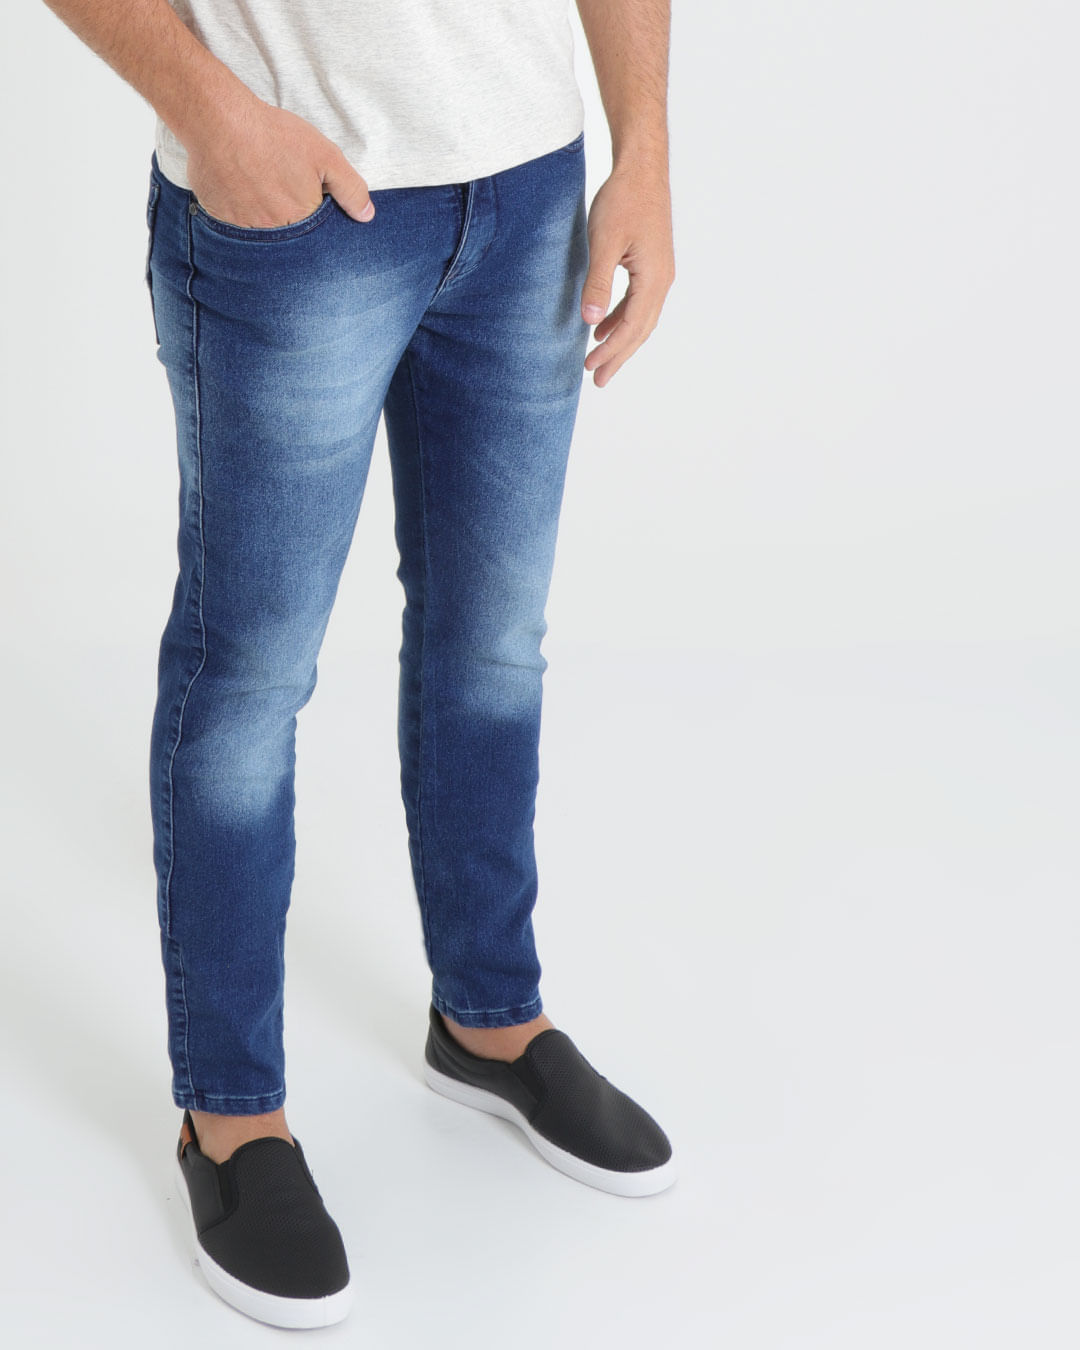 Calca-Jeans-Masculina-Elastano-Azul-Escuro-Delave